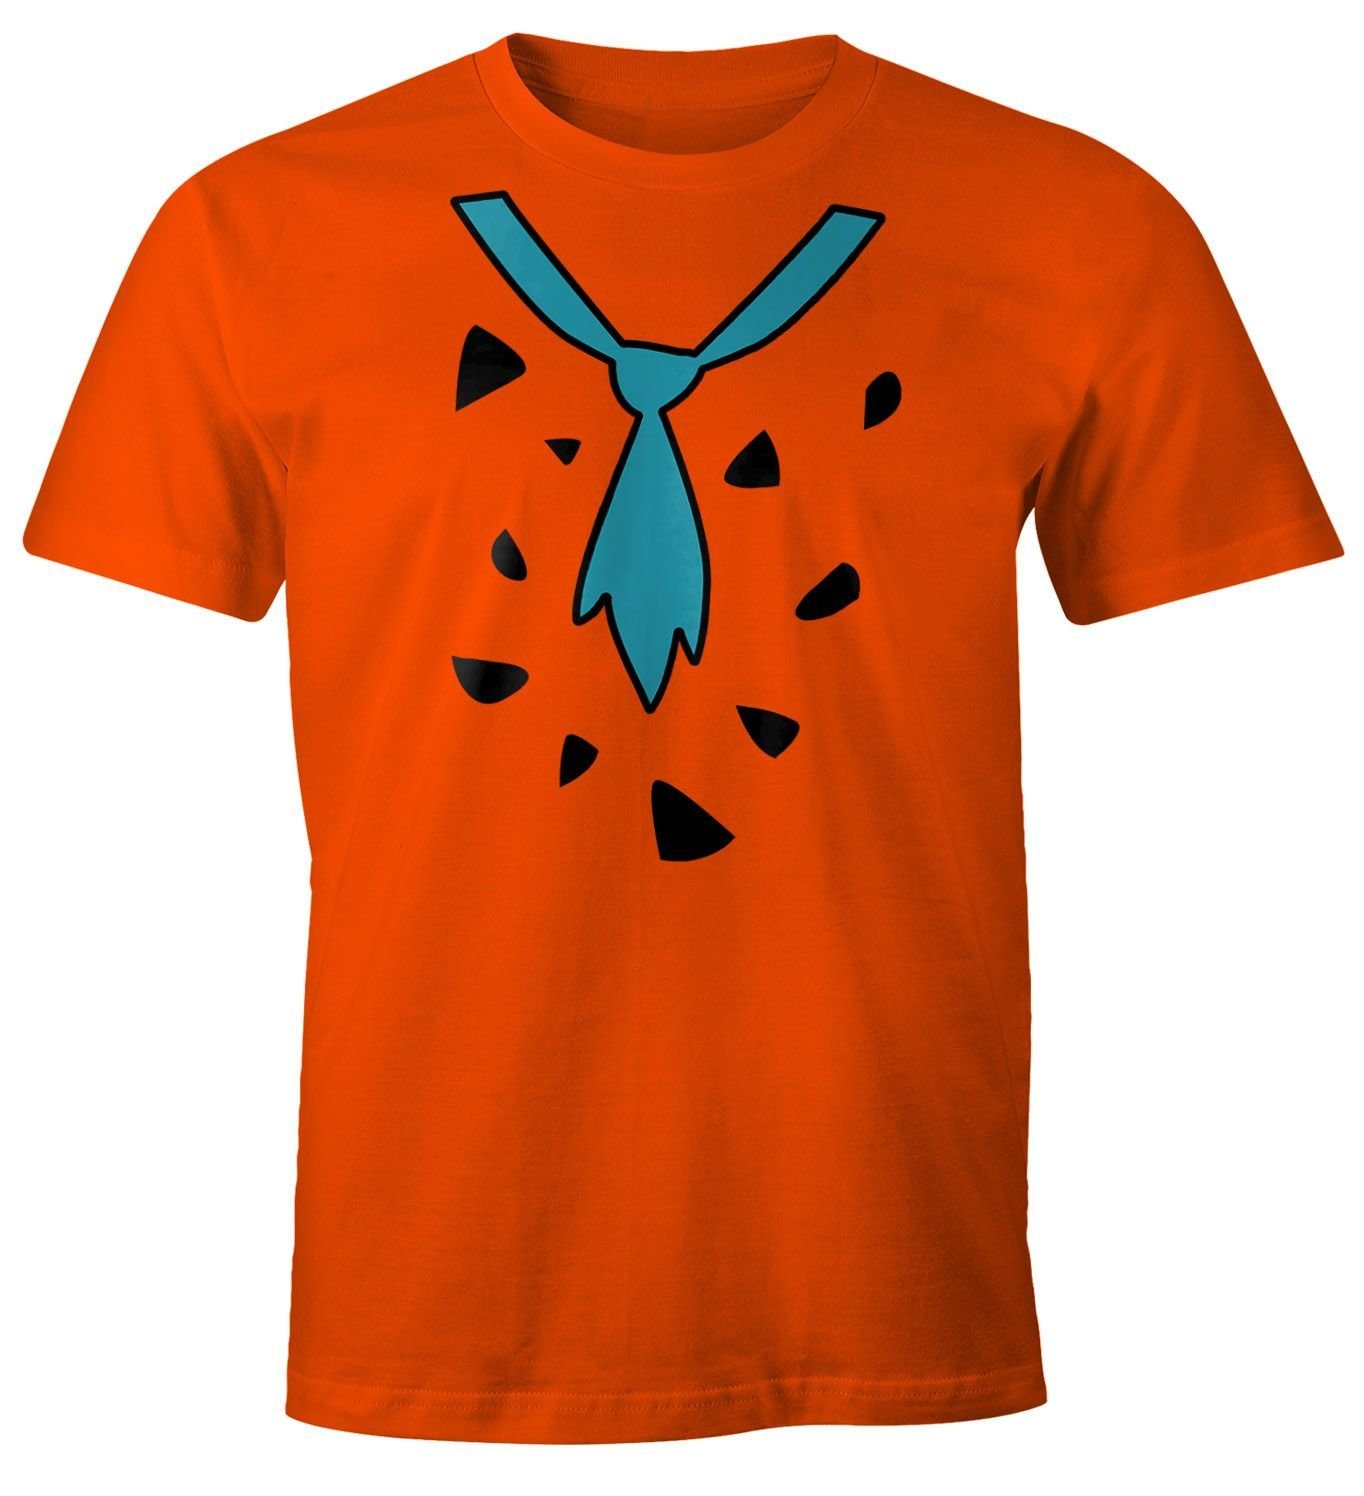 Herren Feuerstein Faschings-Shirt Print-Shirt mit Fasching Print Karneval Moonworks® Fred MoonWorks T-Shirt